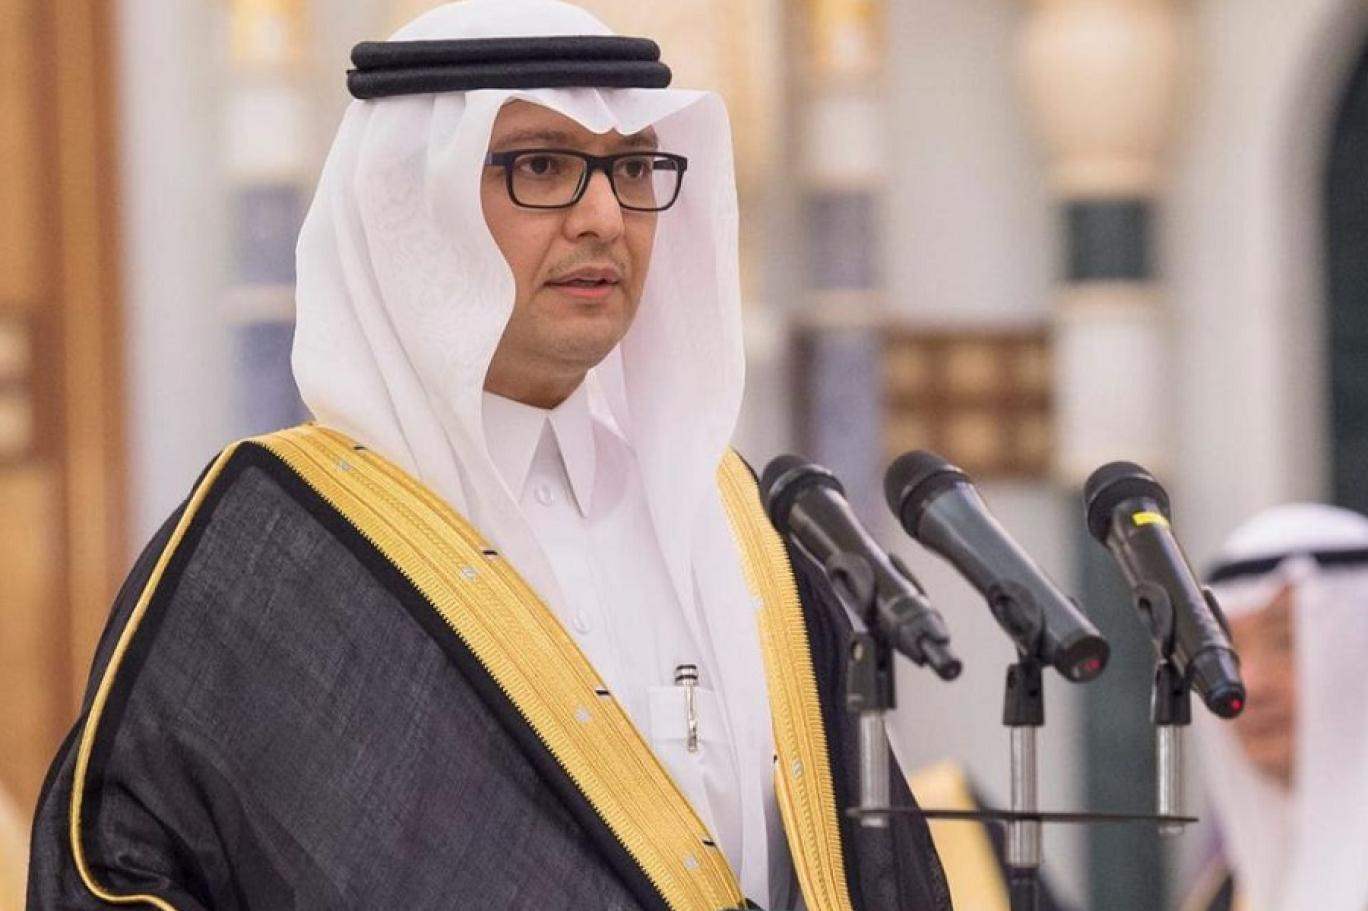 السفير السعودي في الرابع من آب: دقيقة صمت تكريماً لأرواح ضحايا الانفجار وتضامناً مع أهاليهم 